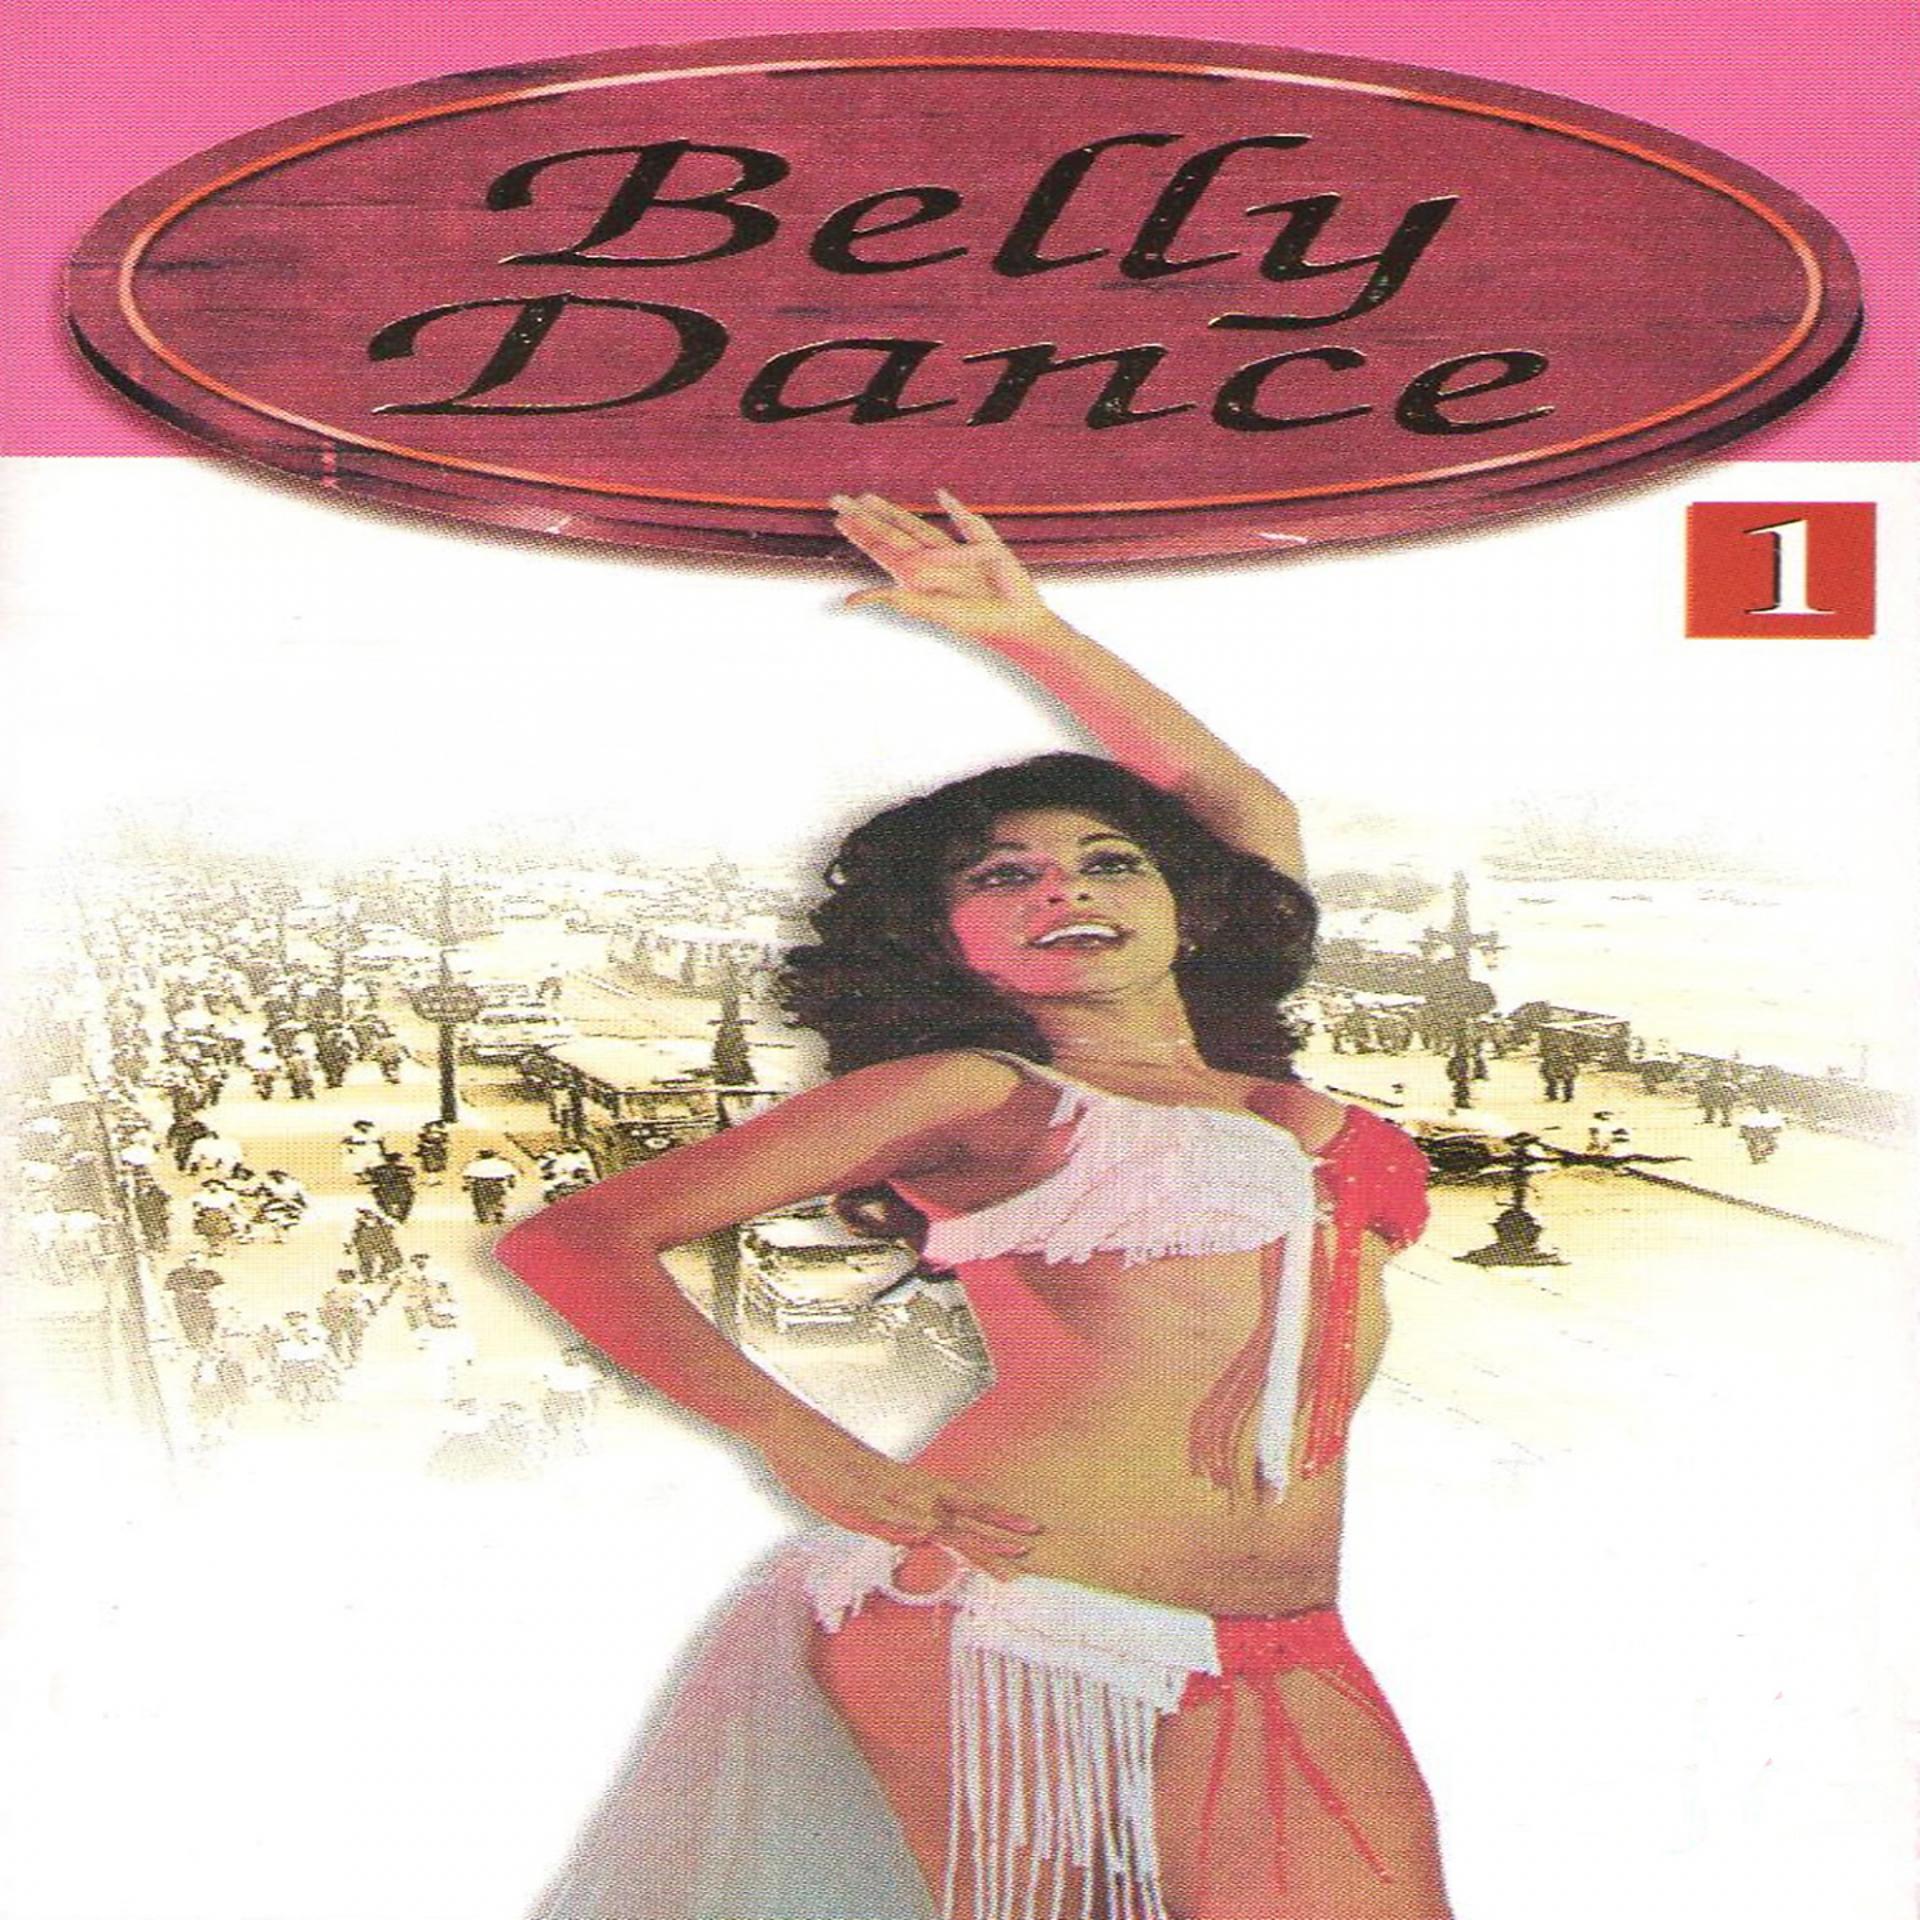 Постер альбома Belly Dance, Vol. 1